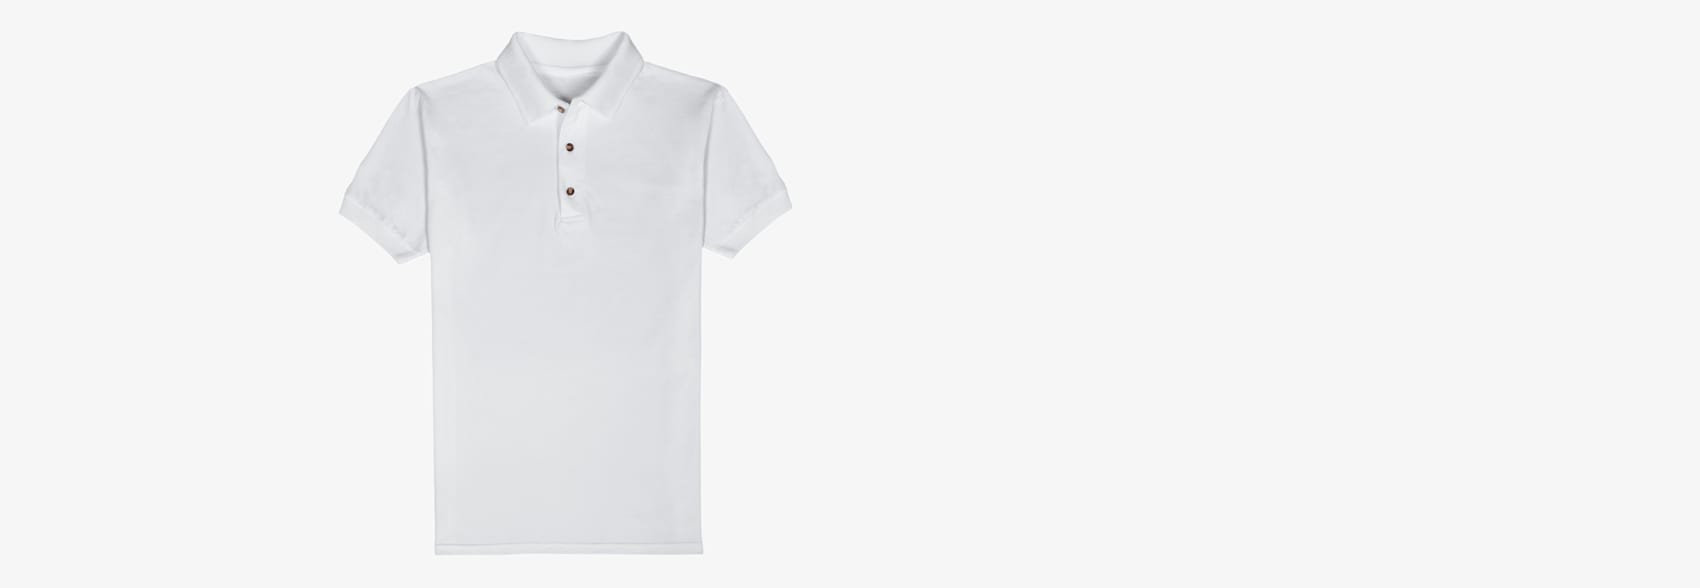 Embroidered Polo Shirts, Custom Polo Shirts | Vistaprint AU